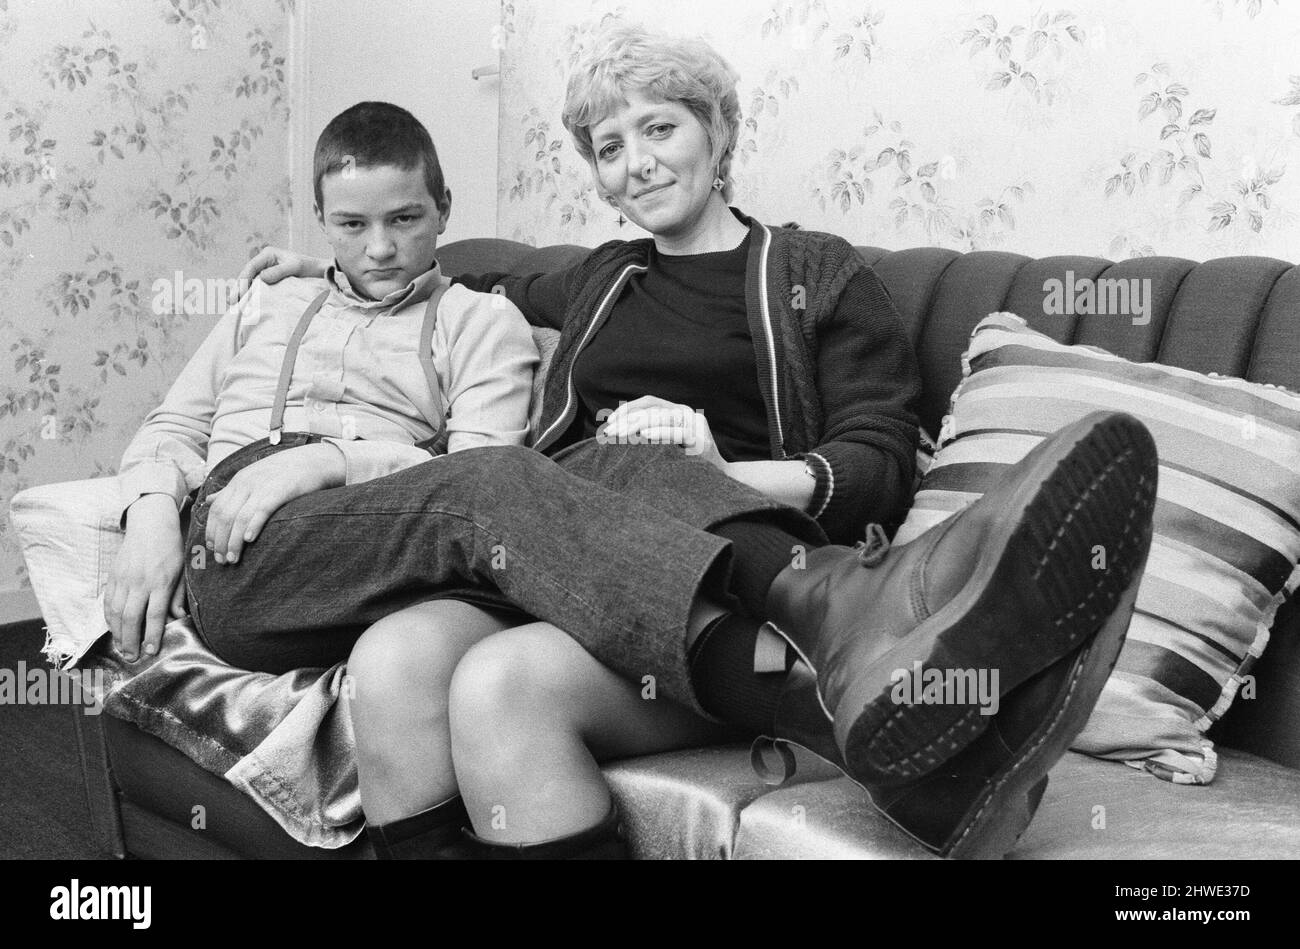 Chris Harward, skinhead âgé de quinze ans, pose chez lui avec sa mère Joan dans leur appartement à Streatham, dans le sud de Londres. 10th avril 1970. Banque D'Images